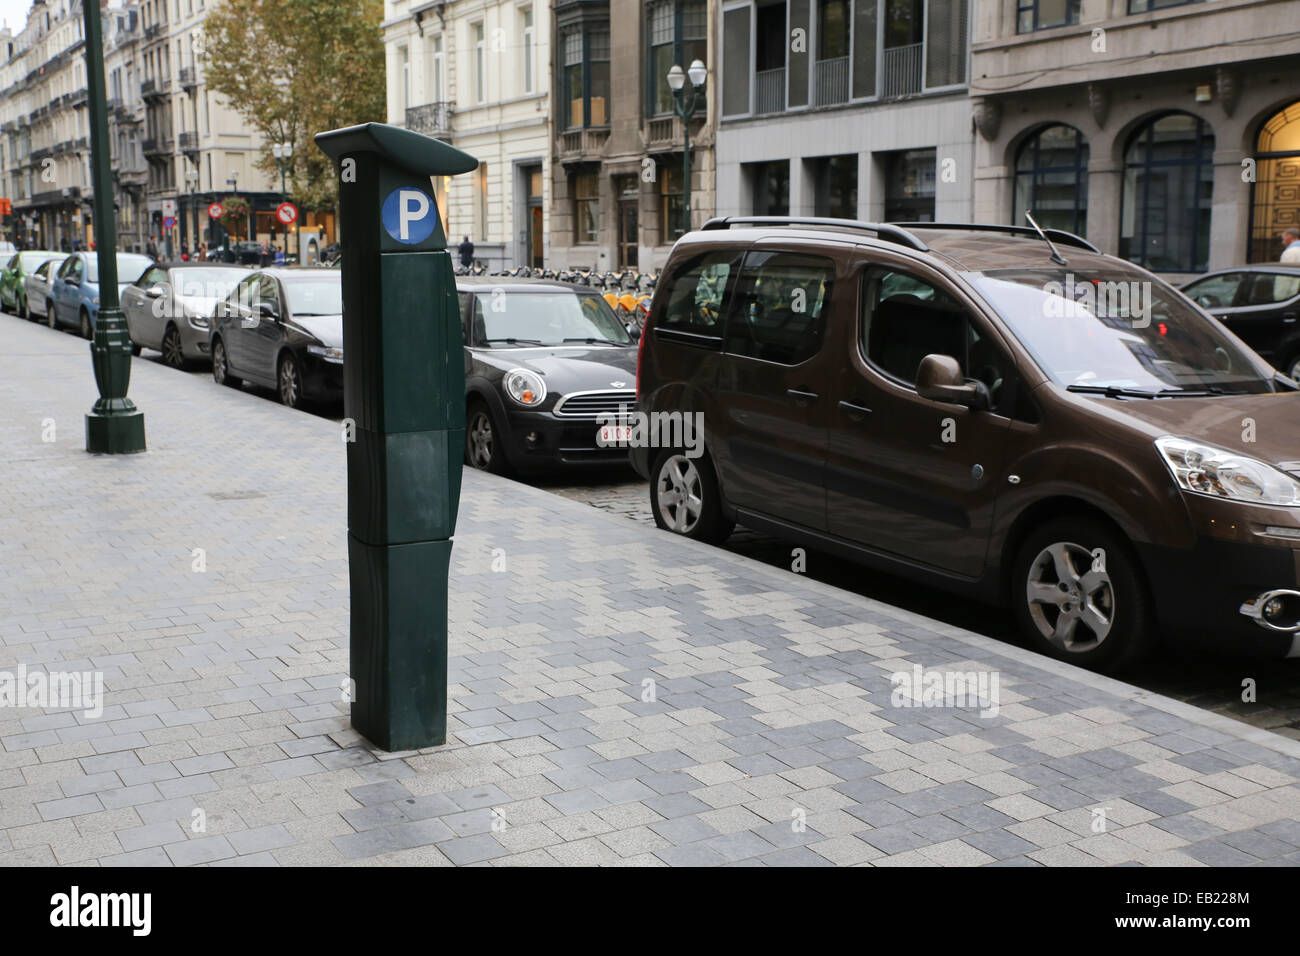 europe street parking meter Stock Photo